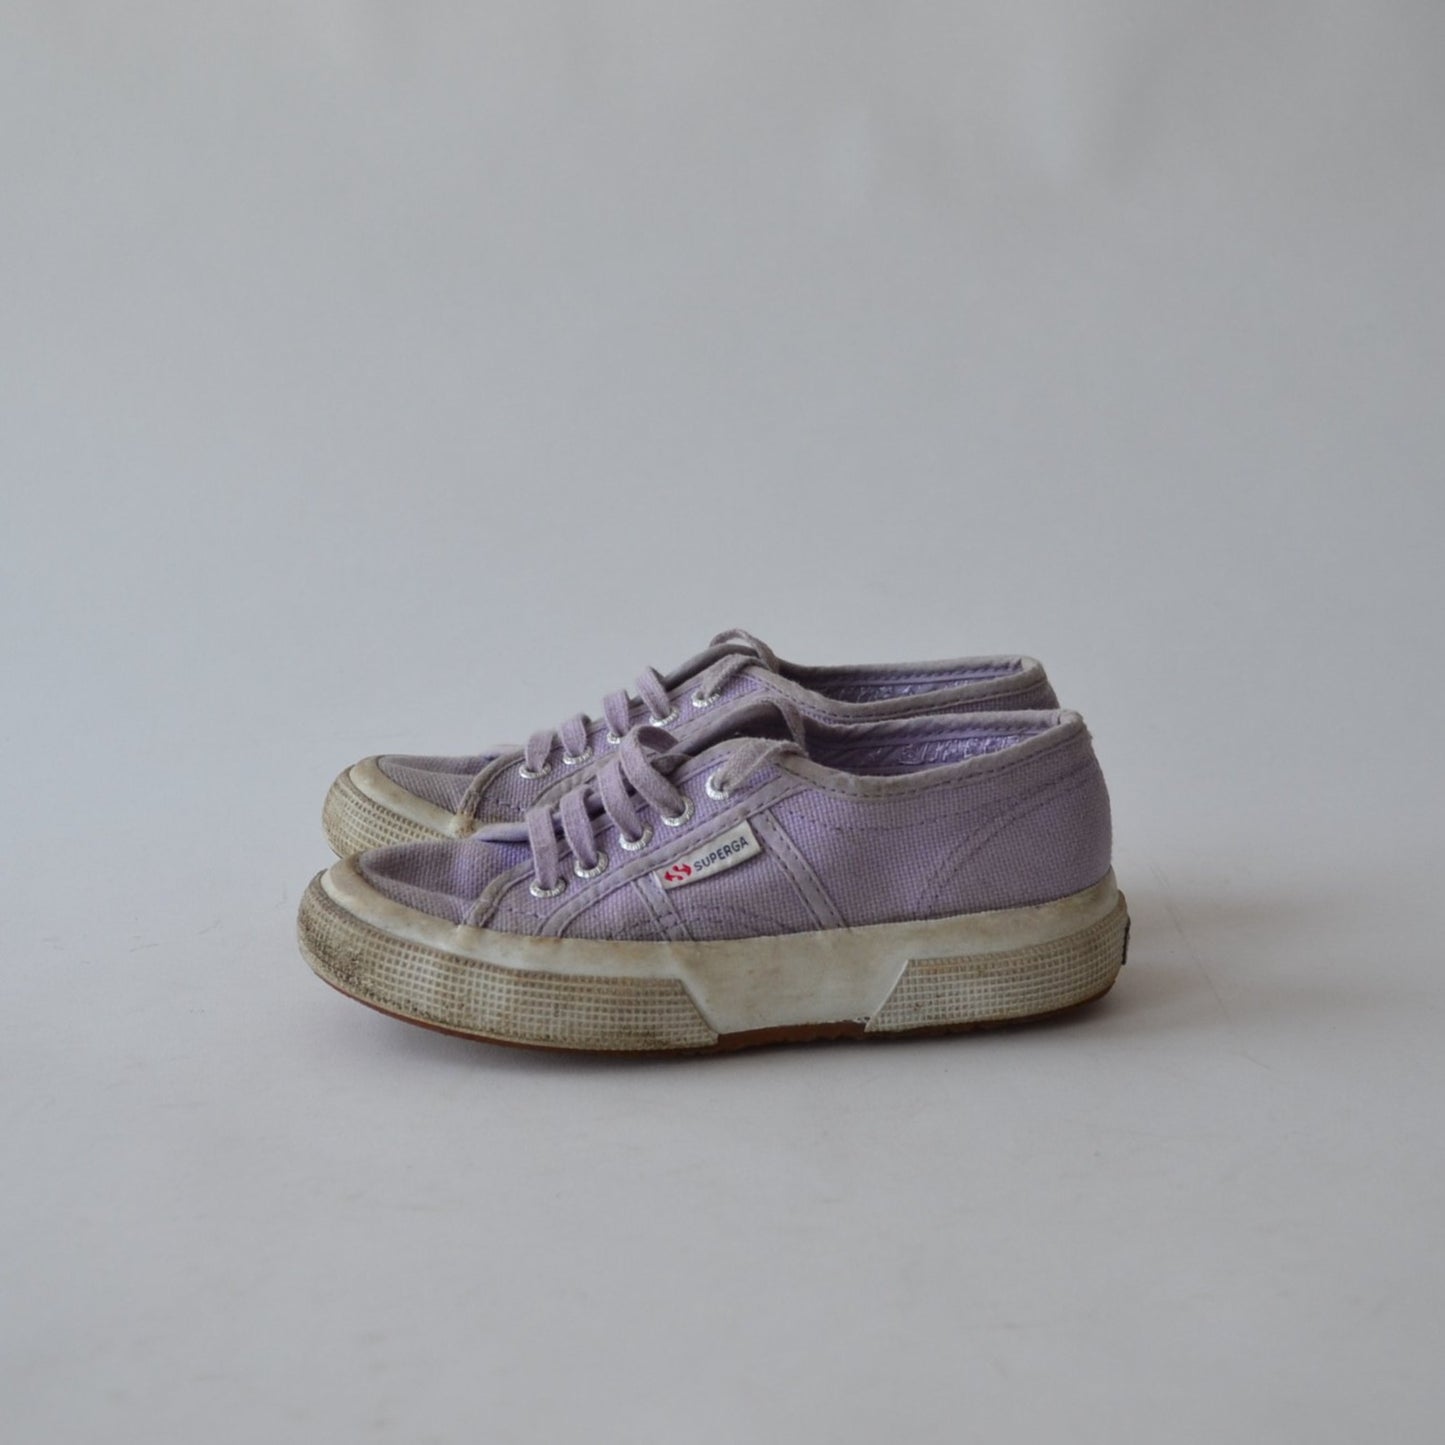 Superga Purple Trainers Shoe Size 11 (jr)